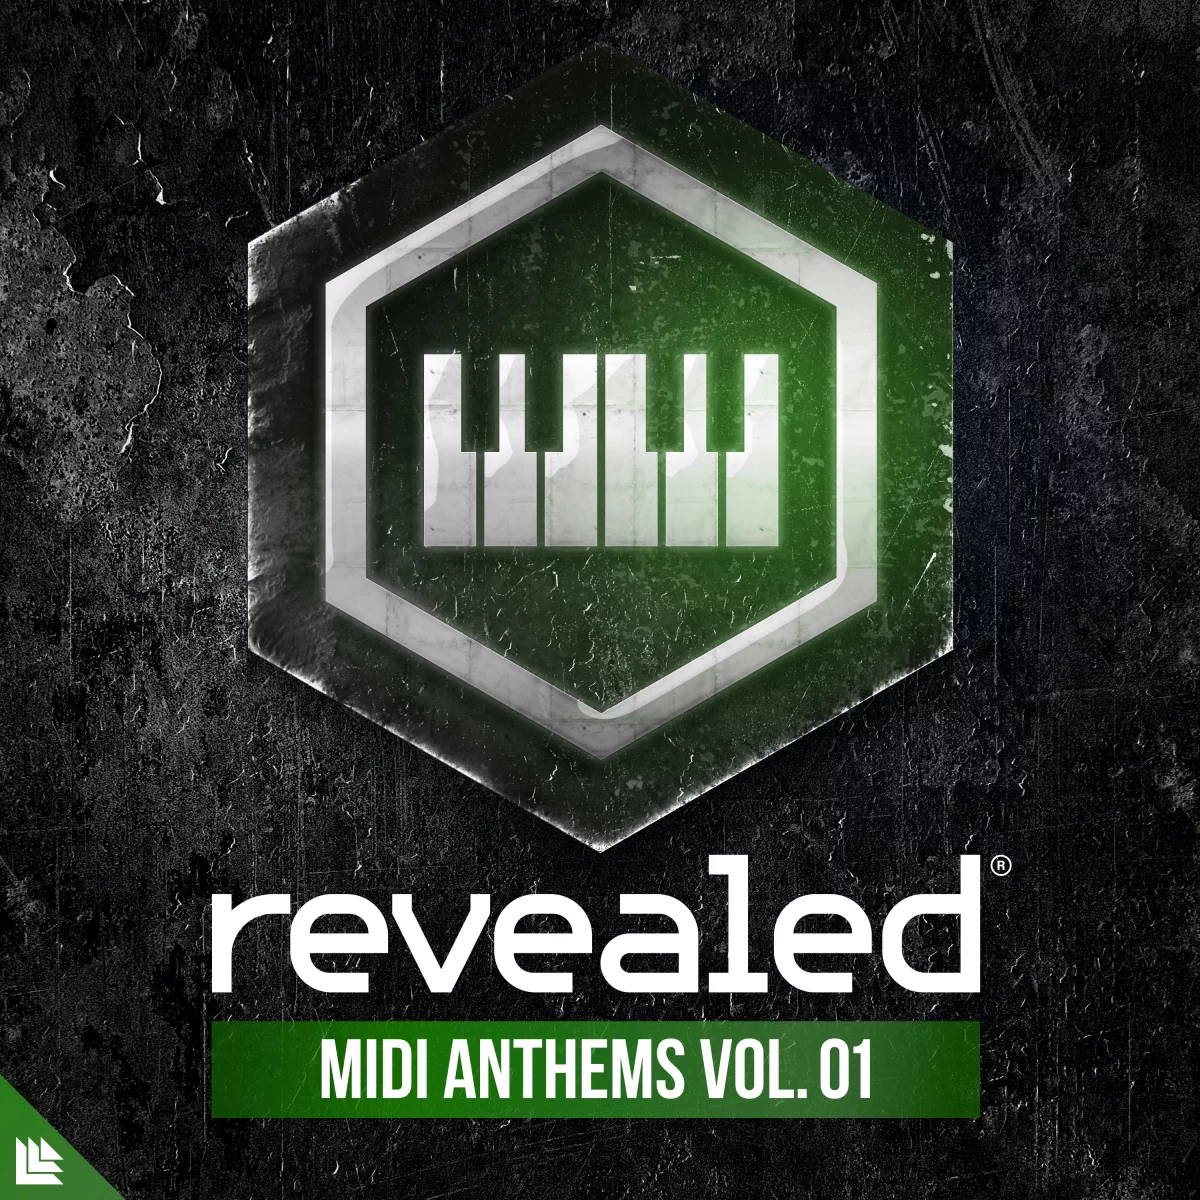 Revealed MIDI Anthems Vol. 1 - revealedrec⁠ 